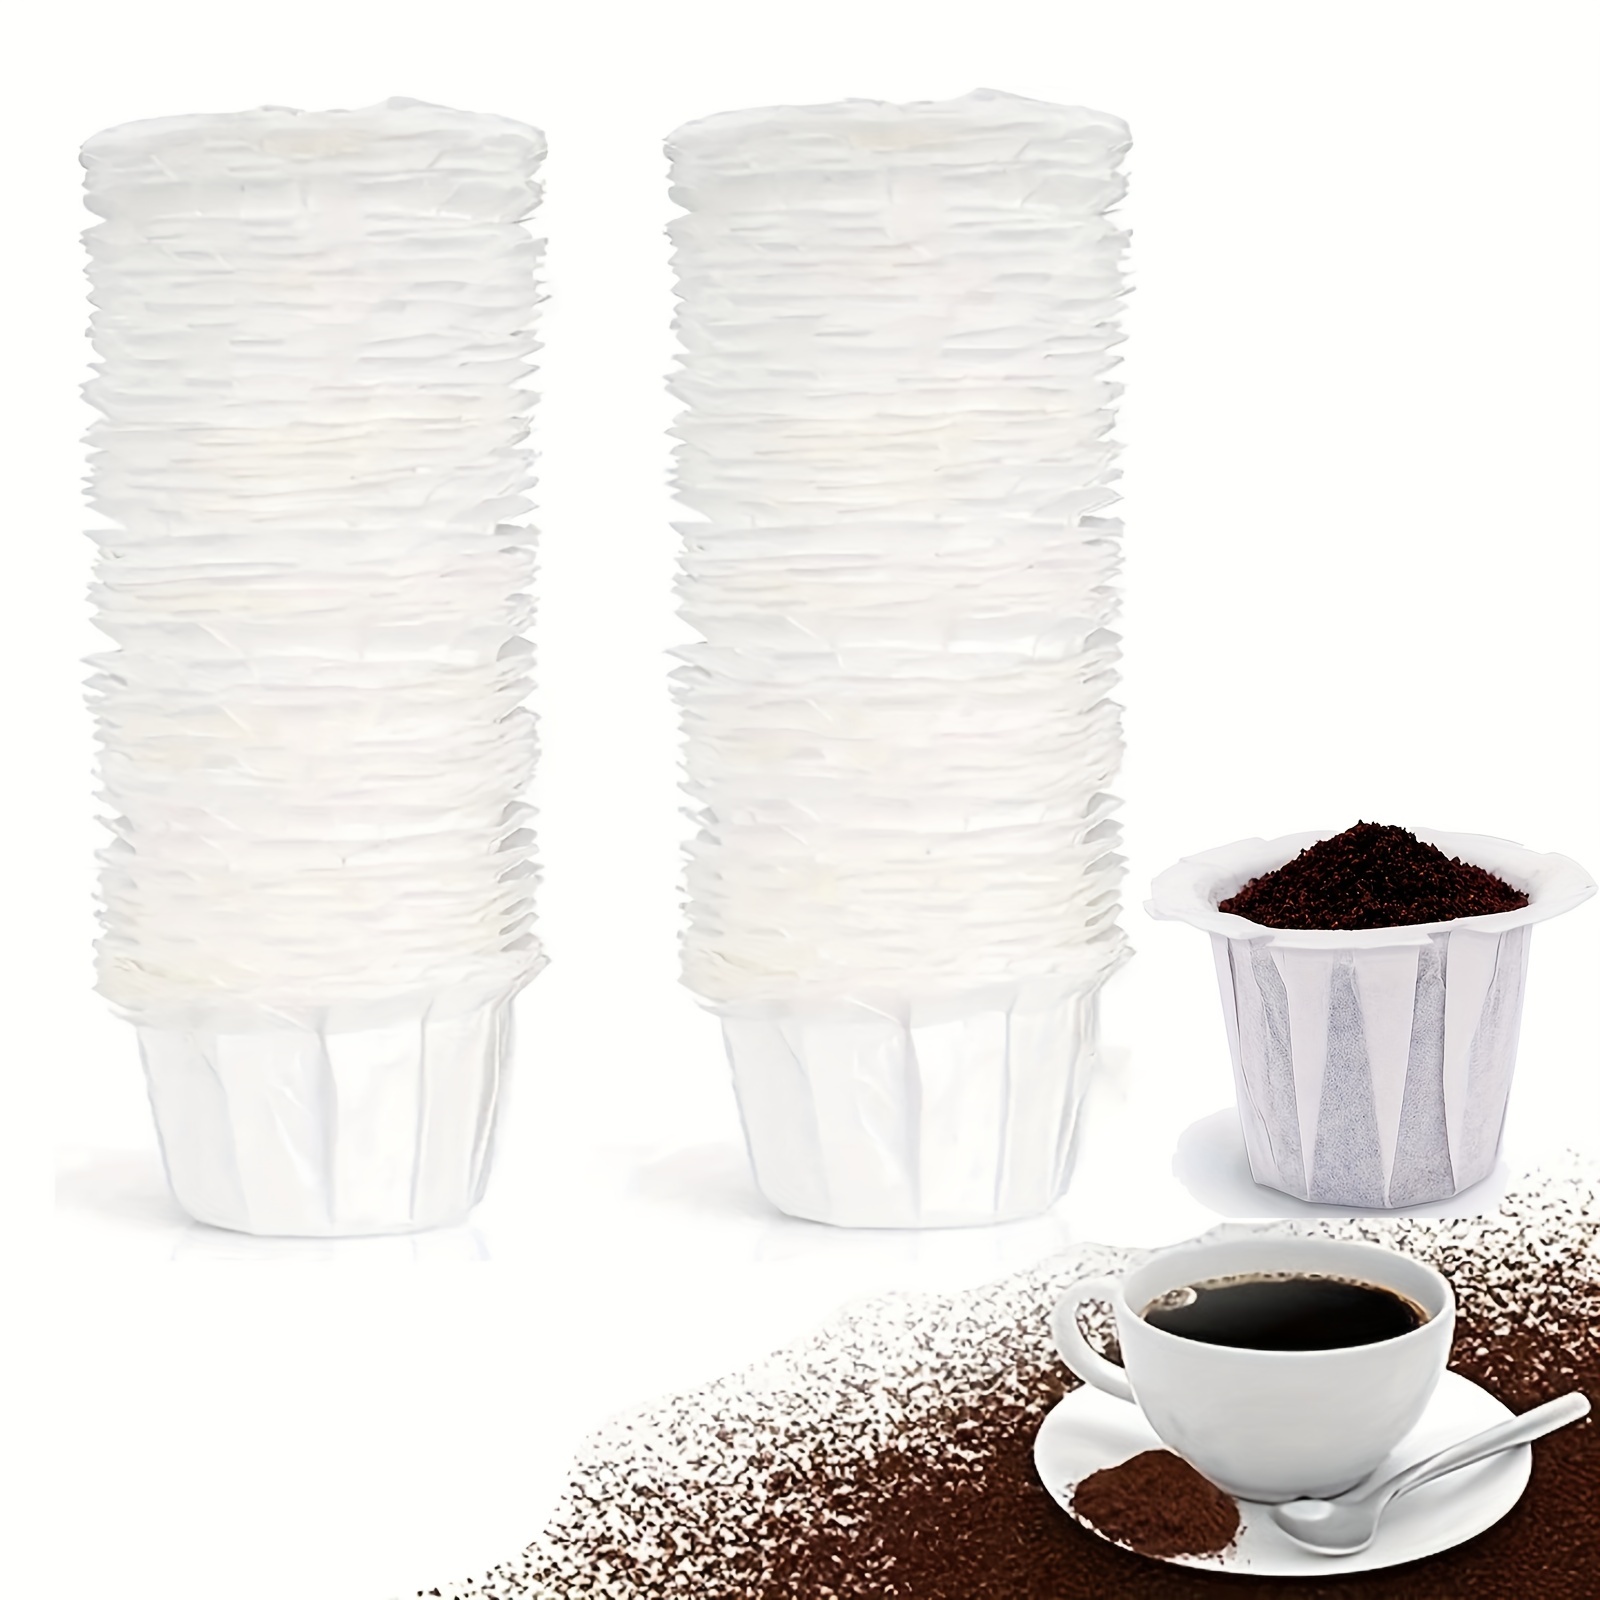  Filtros de café reutilizables para Mr. Coffee 5 tazas de  repuesto de filtro de café de 4 paquetes de filtros de café pequeños  universales para cafeteras de goteo de 4-5 tazas